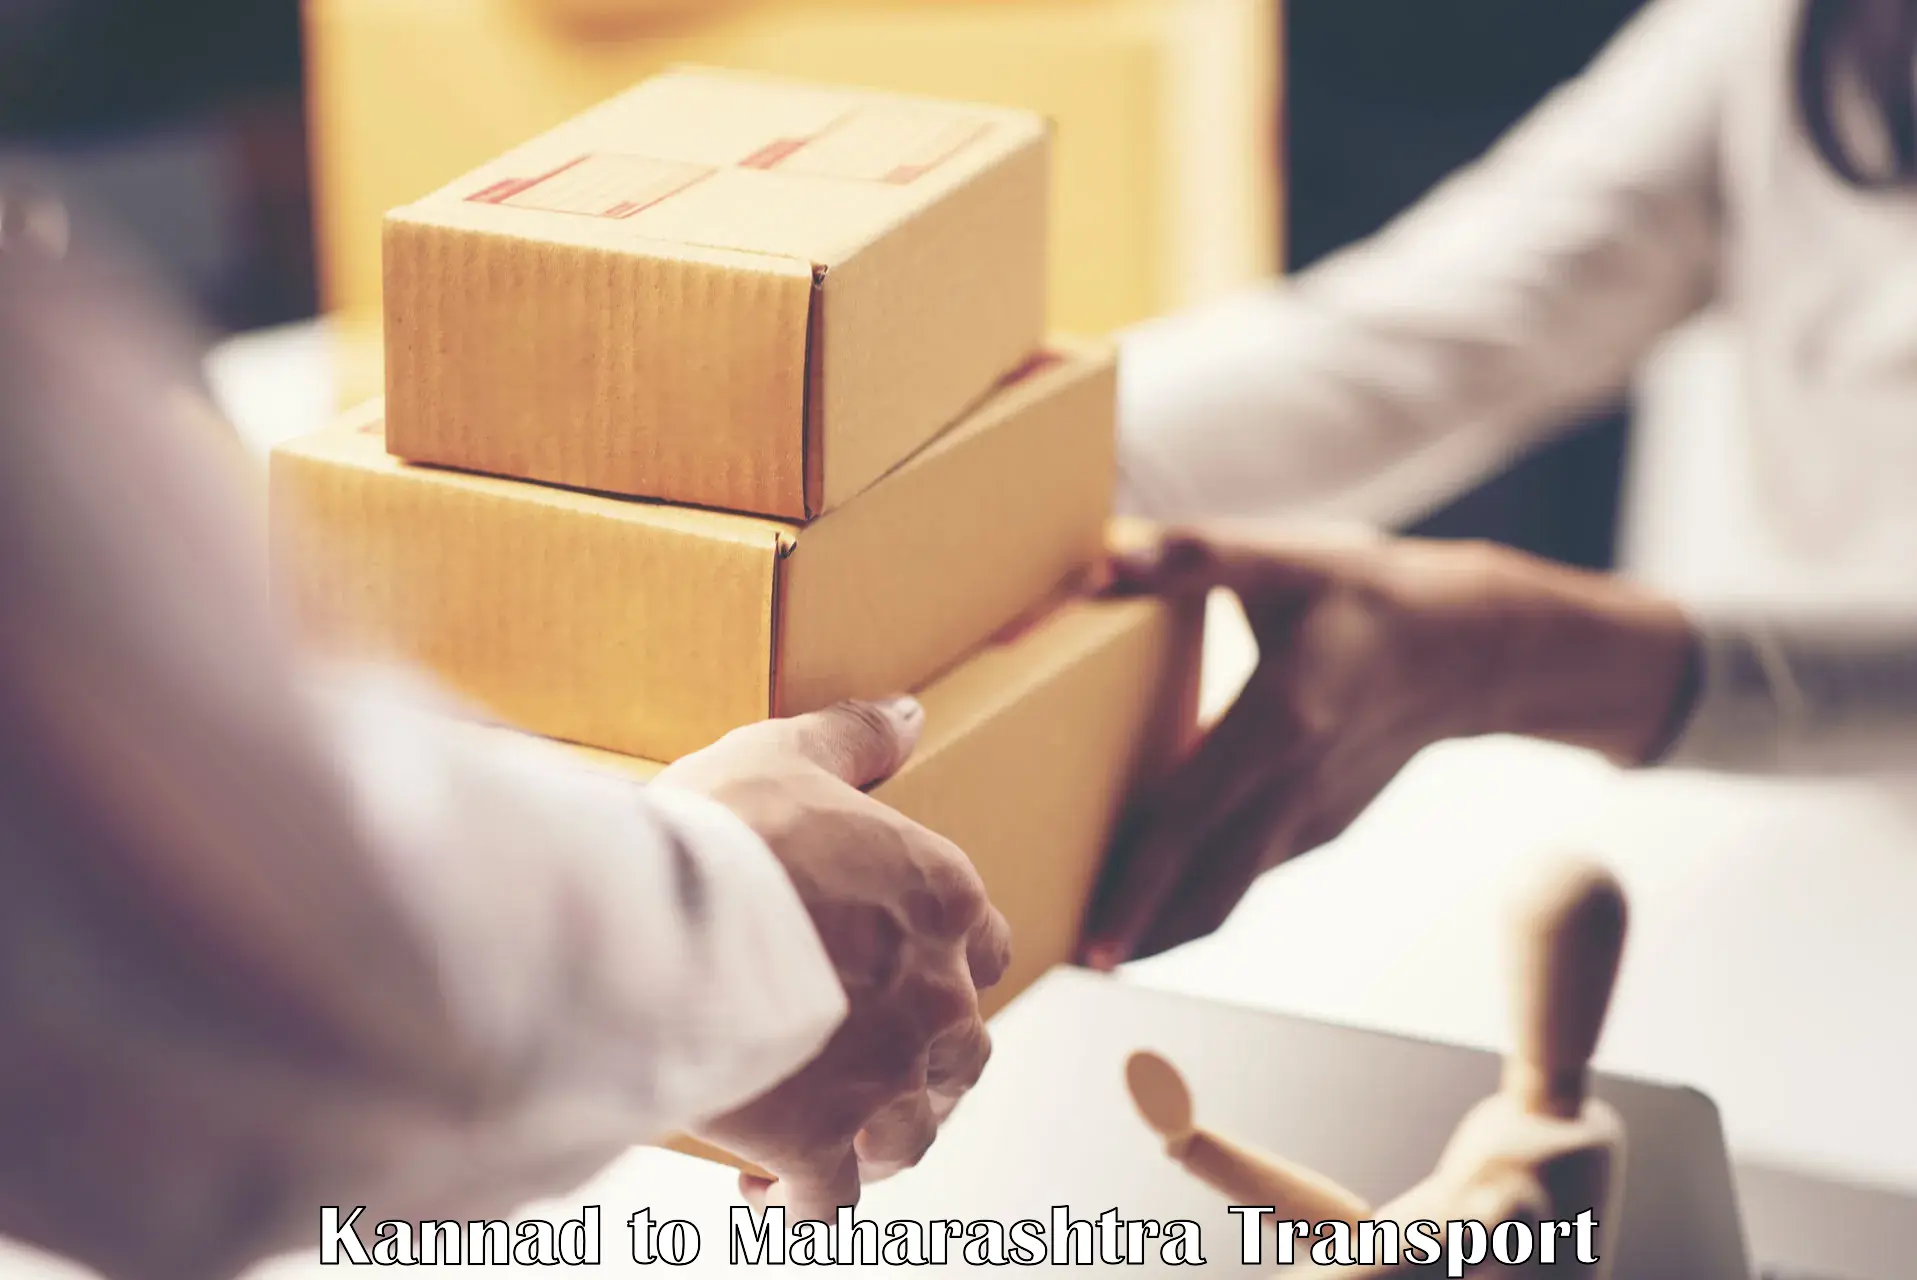 Container transportation services Kannad to Maharashtra